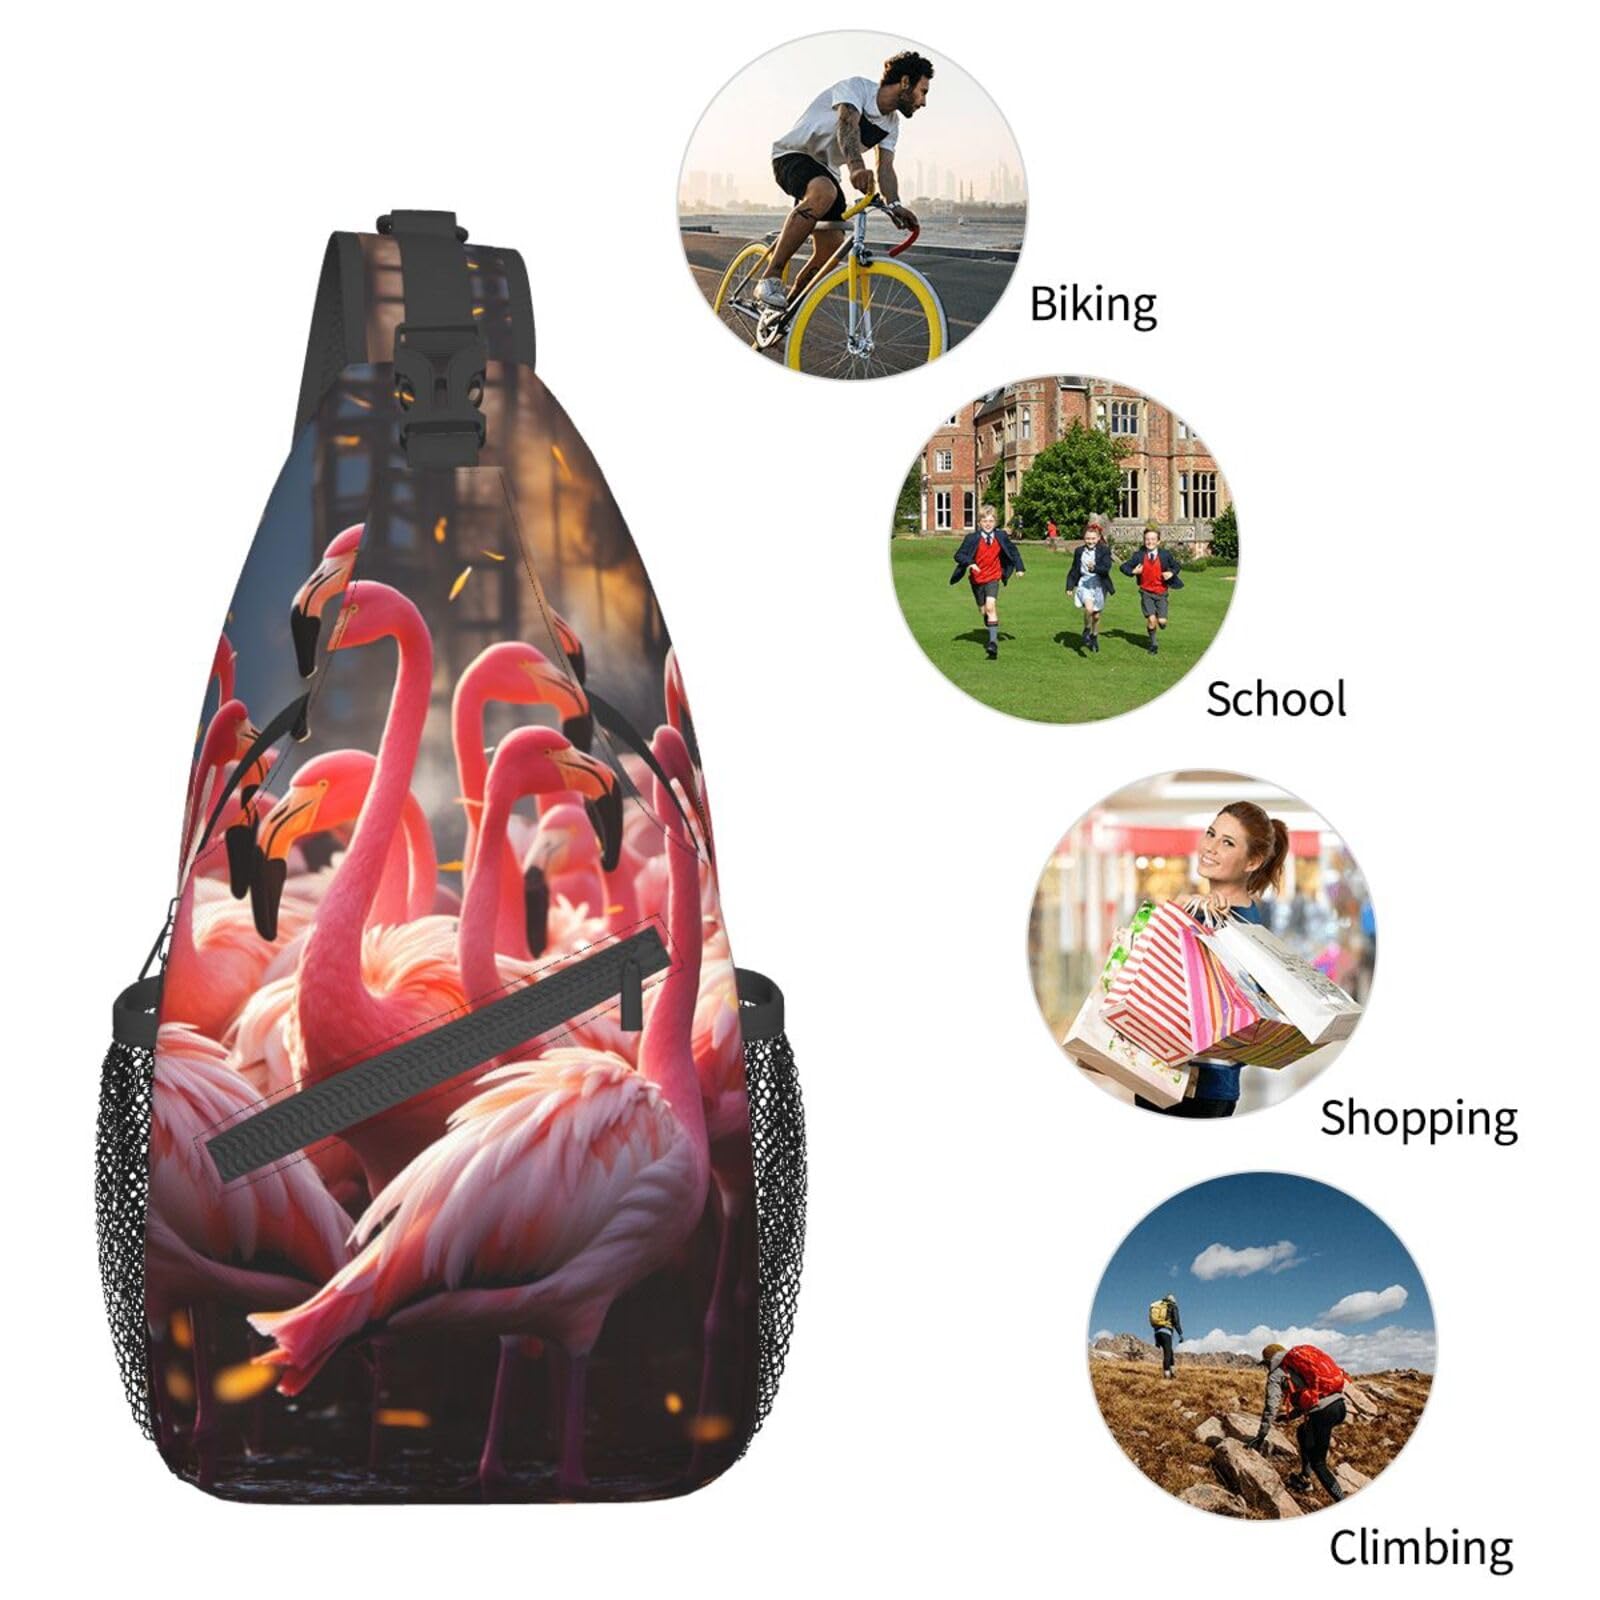 Flamingos Partying Sling Bag Lightweight Crossbody Bag Shoulder Bag Chest Bag Travel Backpack for Women Men